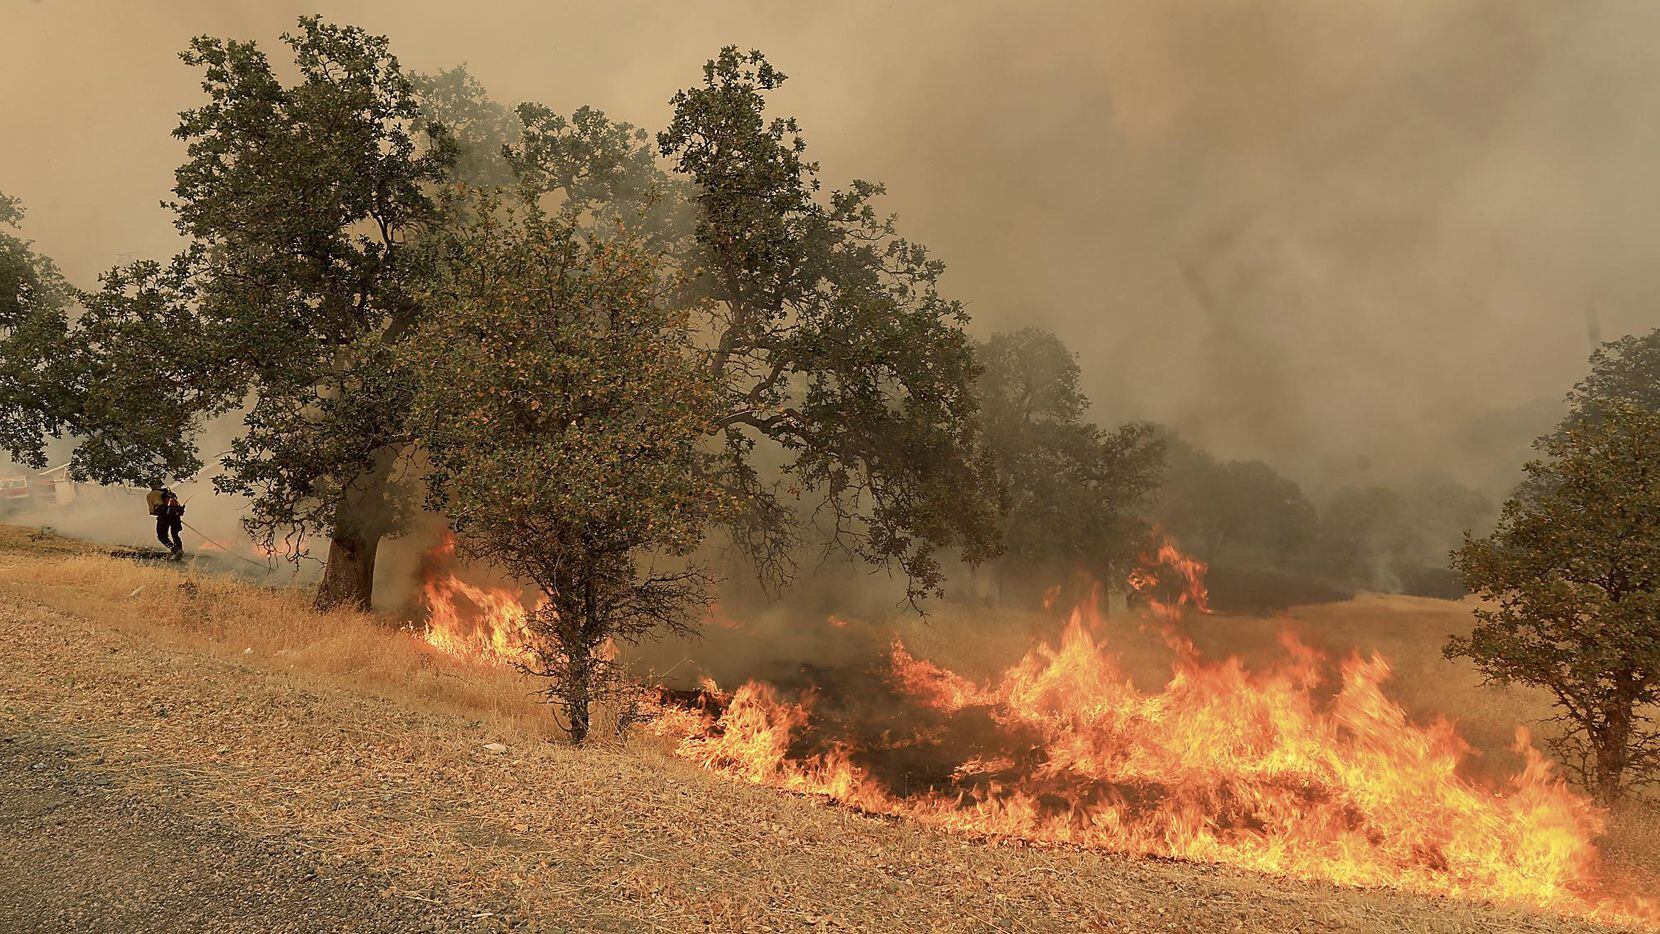 El fuego consume zonas silvestres en Spring Valley, Calif. el norte de California.(AP)
